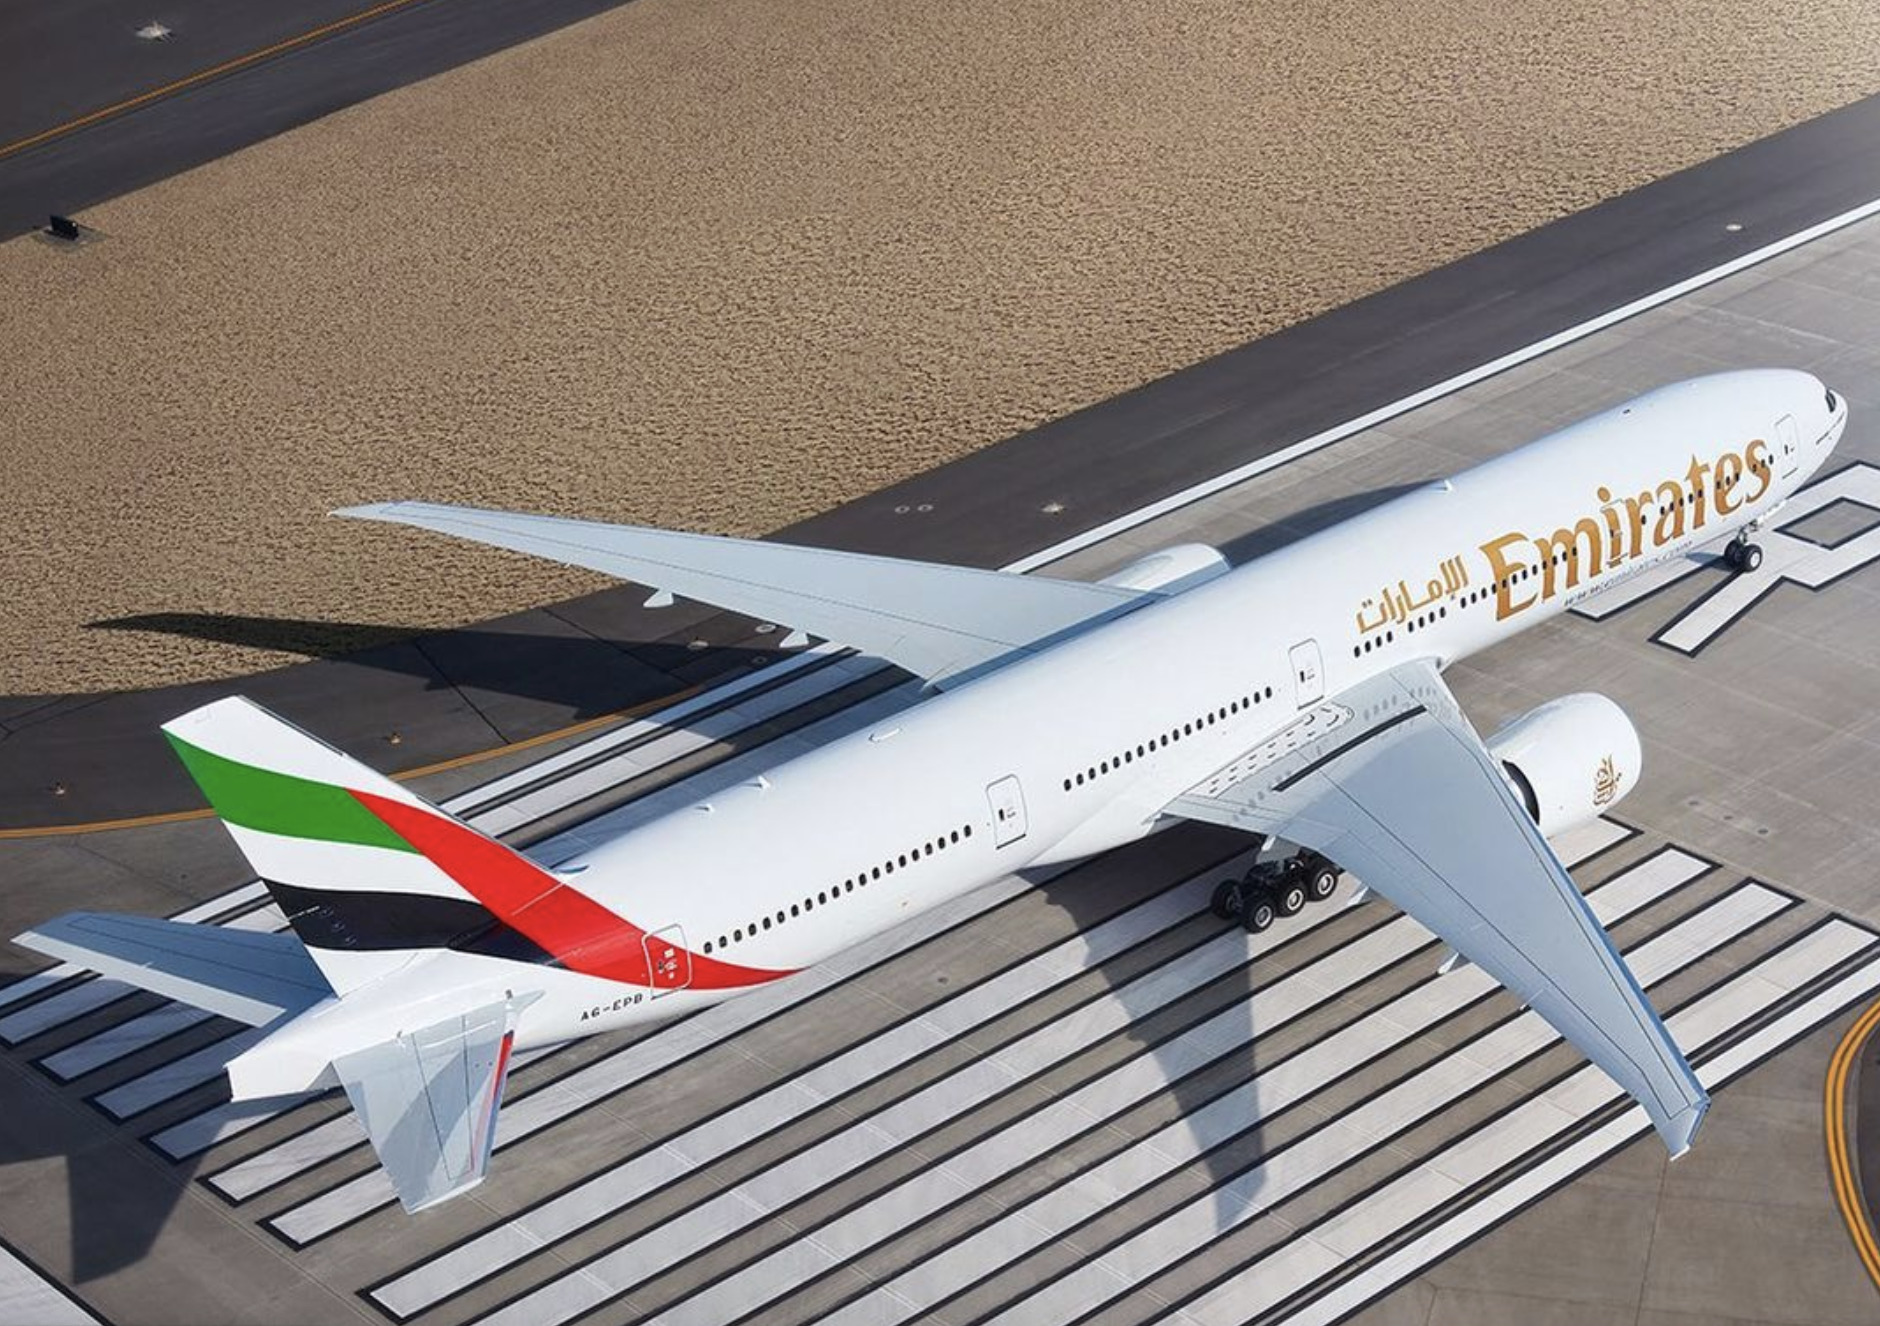 Добраться до Европы можно обходными путями — например, через Дубай, с помощью авиакомпании Emirates